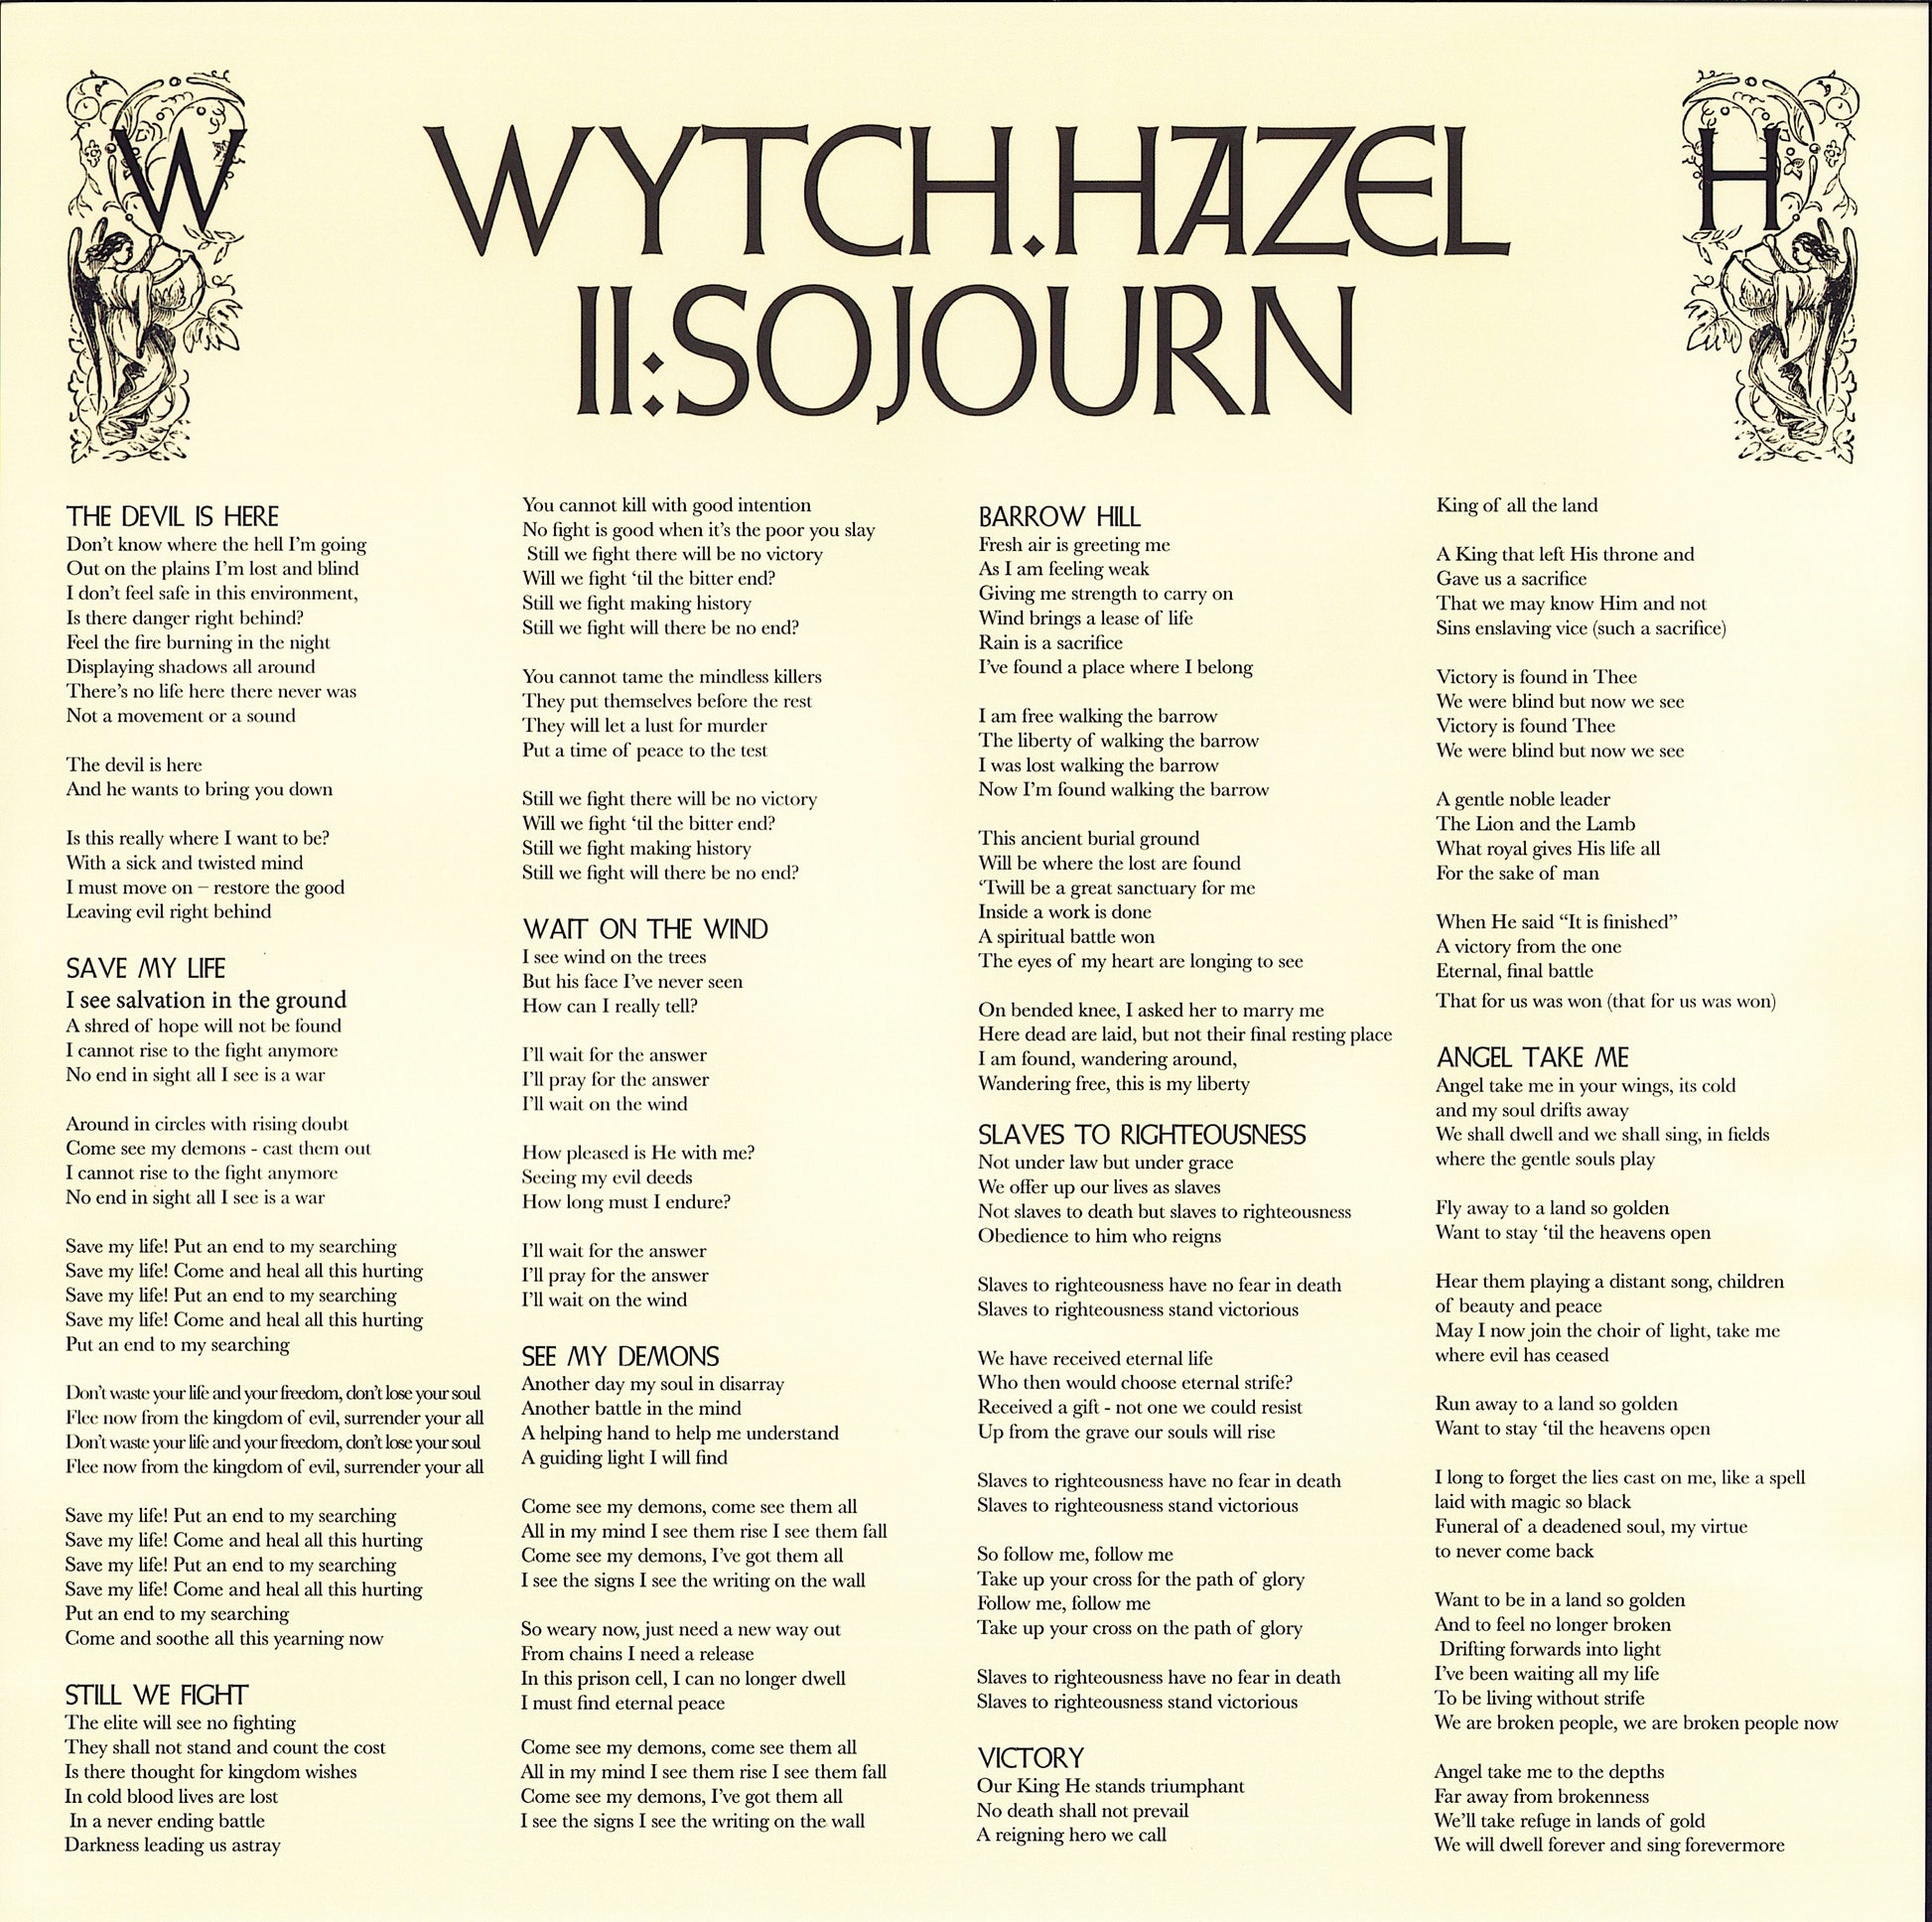 Wytch Hazel - II: Sojourn Beer Transparent Vinyl LP